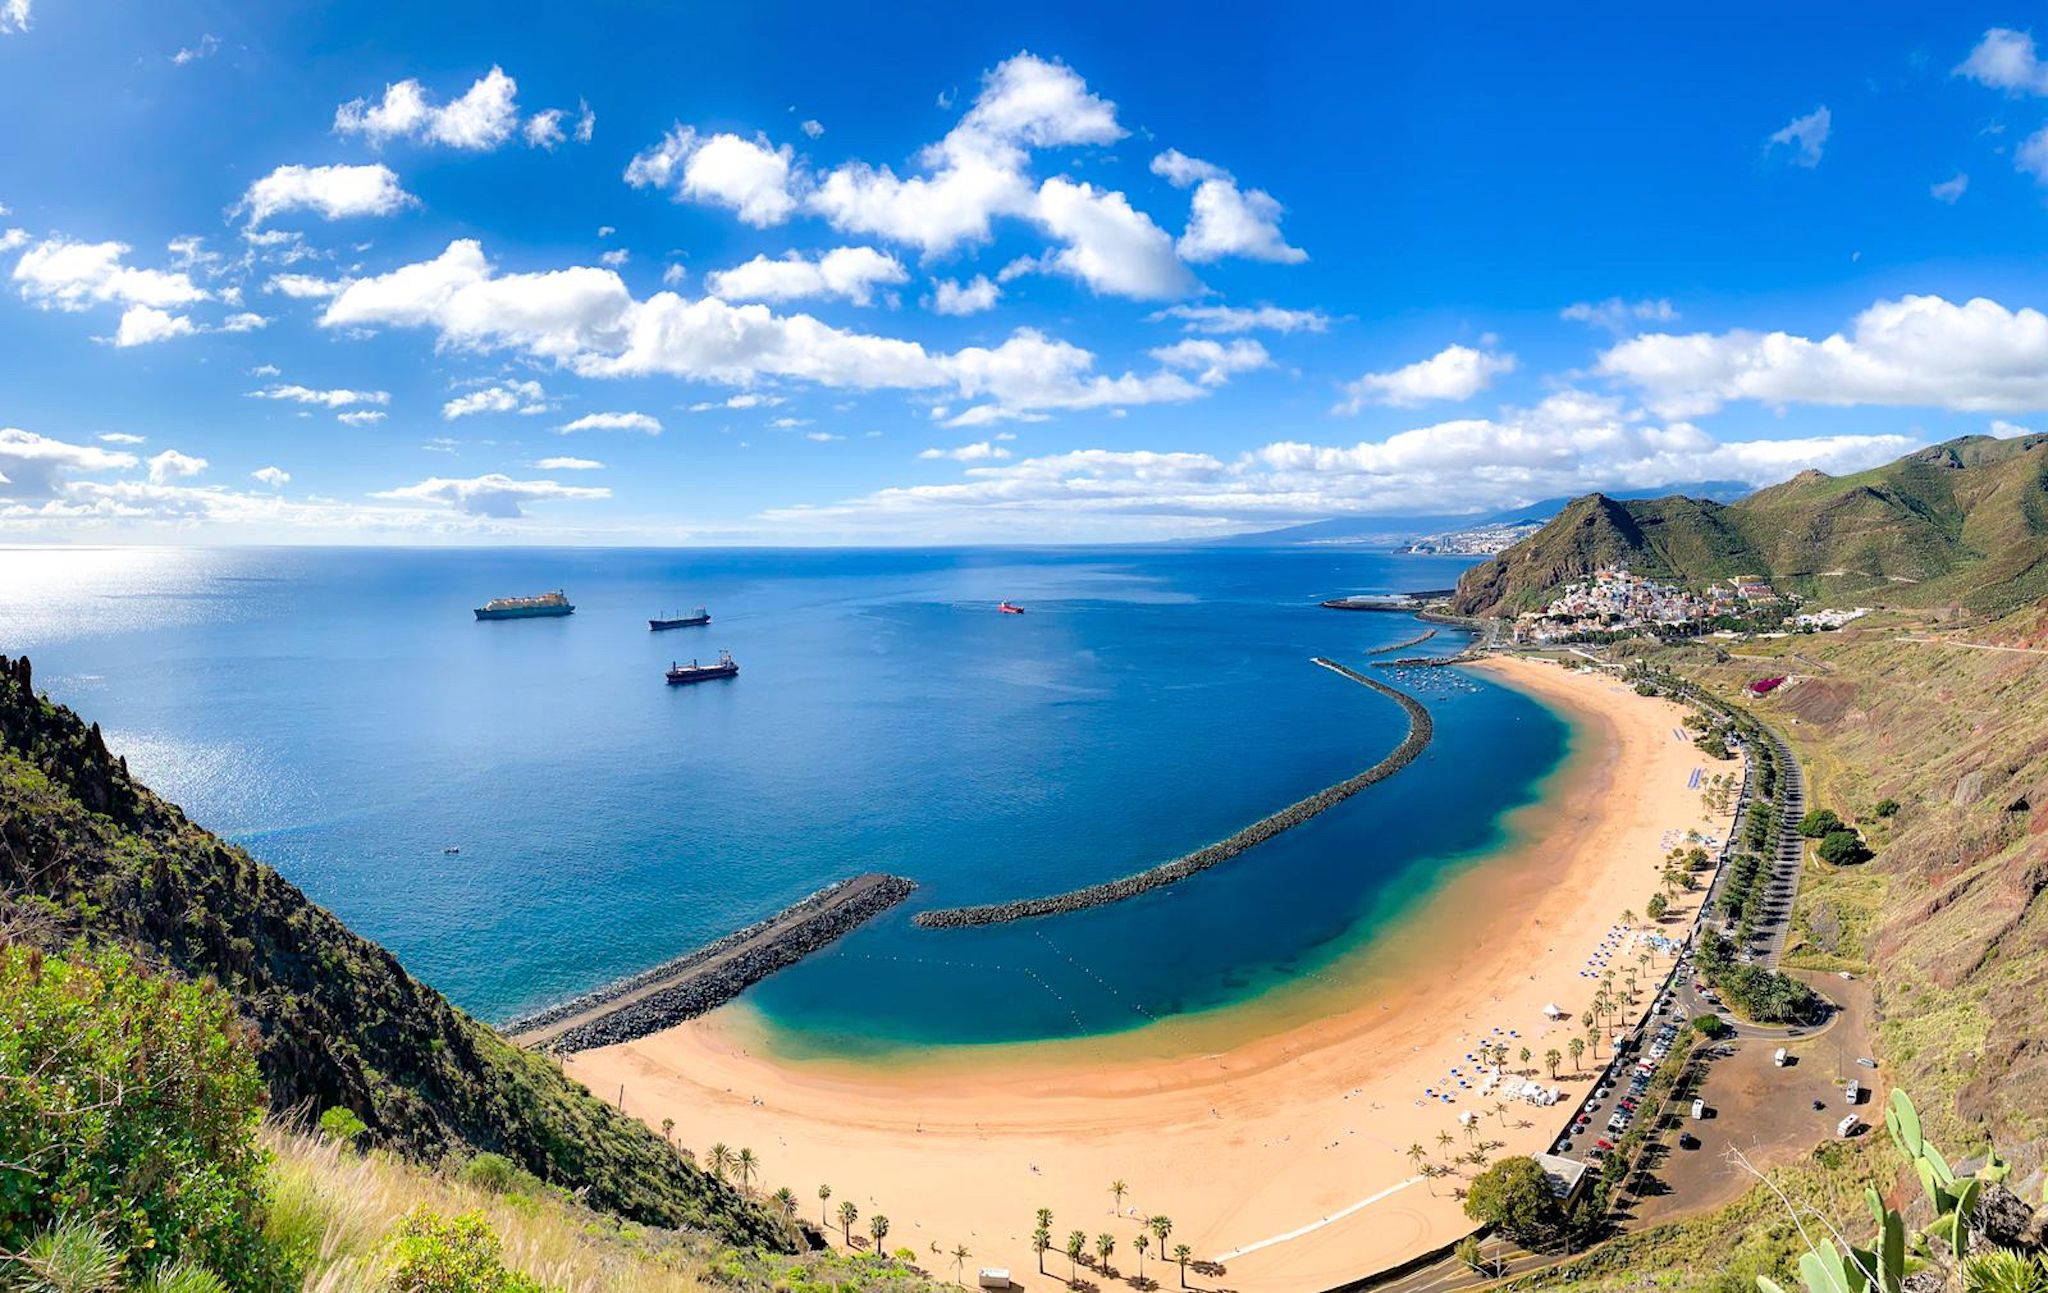 Wat valt er te ontdekken op de grote, wilde schoonheid van de Canarische Eilanden? We hebben ter plaatse rondgekeken en in ons reisverslag van Tenerife presenteren we je tips over bezienswaardigheden en activiteiten. Afgebeeld: Playa de las Teresitas.